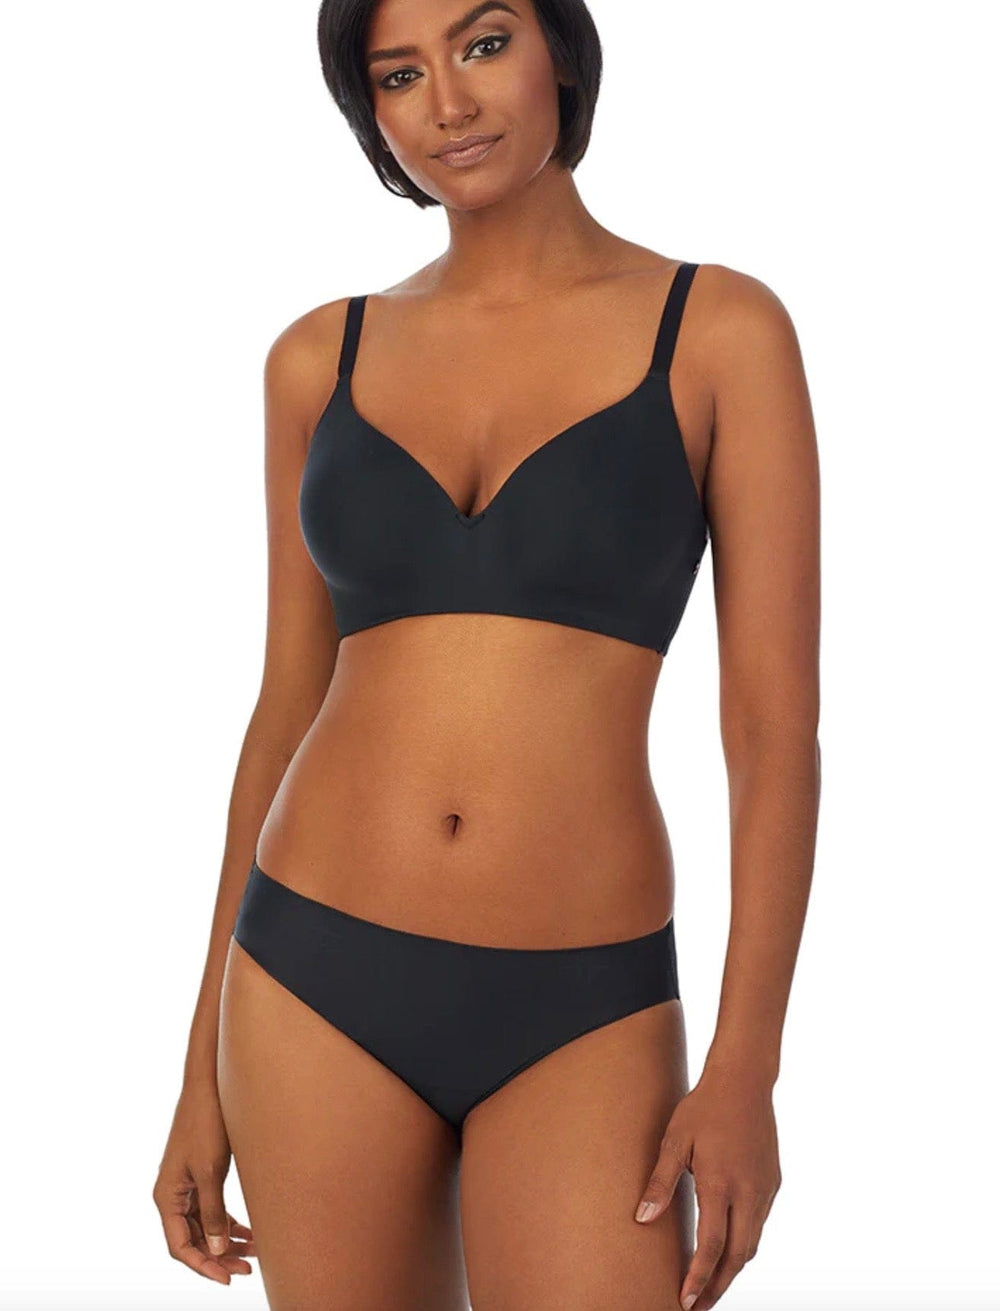 Le Mystere Women's Slim Profile Minimizer Bra, Black, 32 C : :  Clothing, Shoes & Accessories